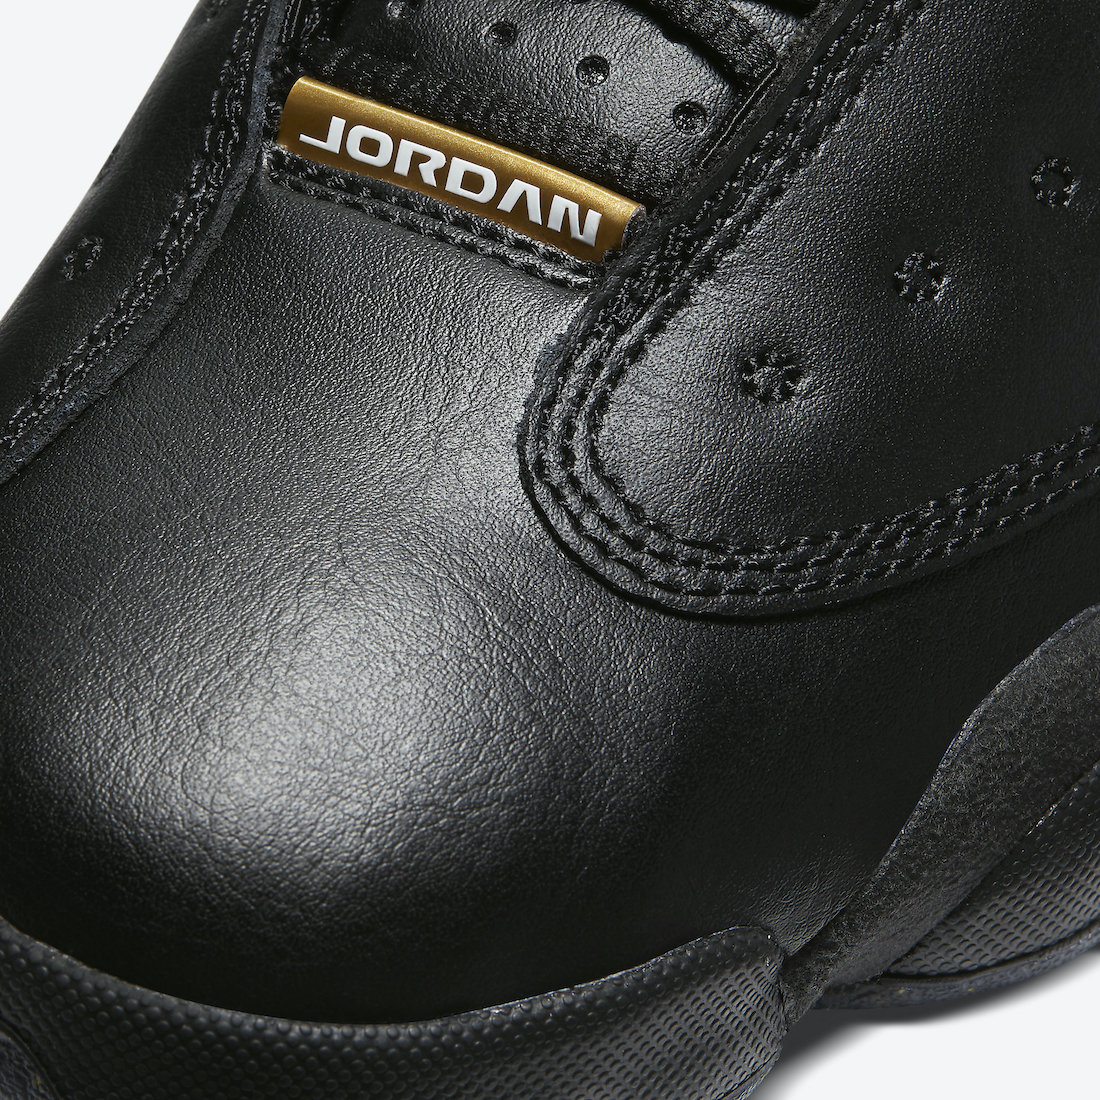 Air Jordan 13 GS Black Gold Glitter DC9443-007 Release Date Price